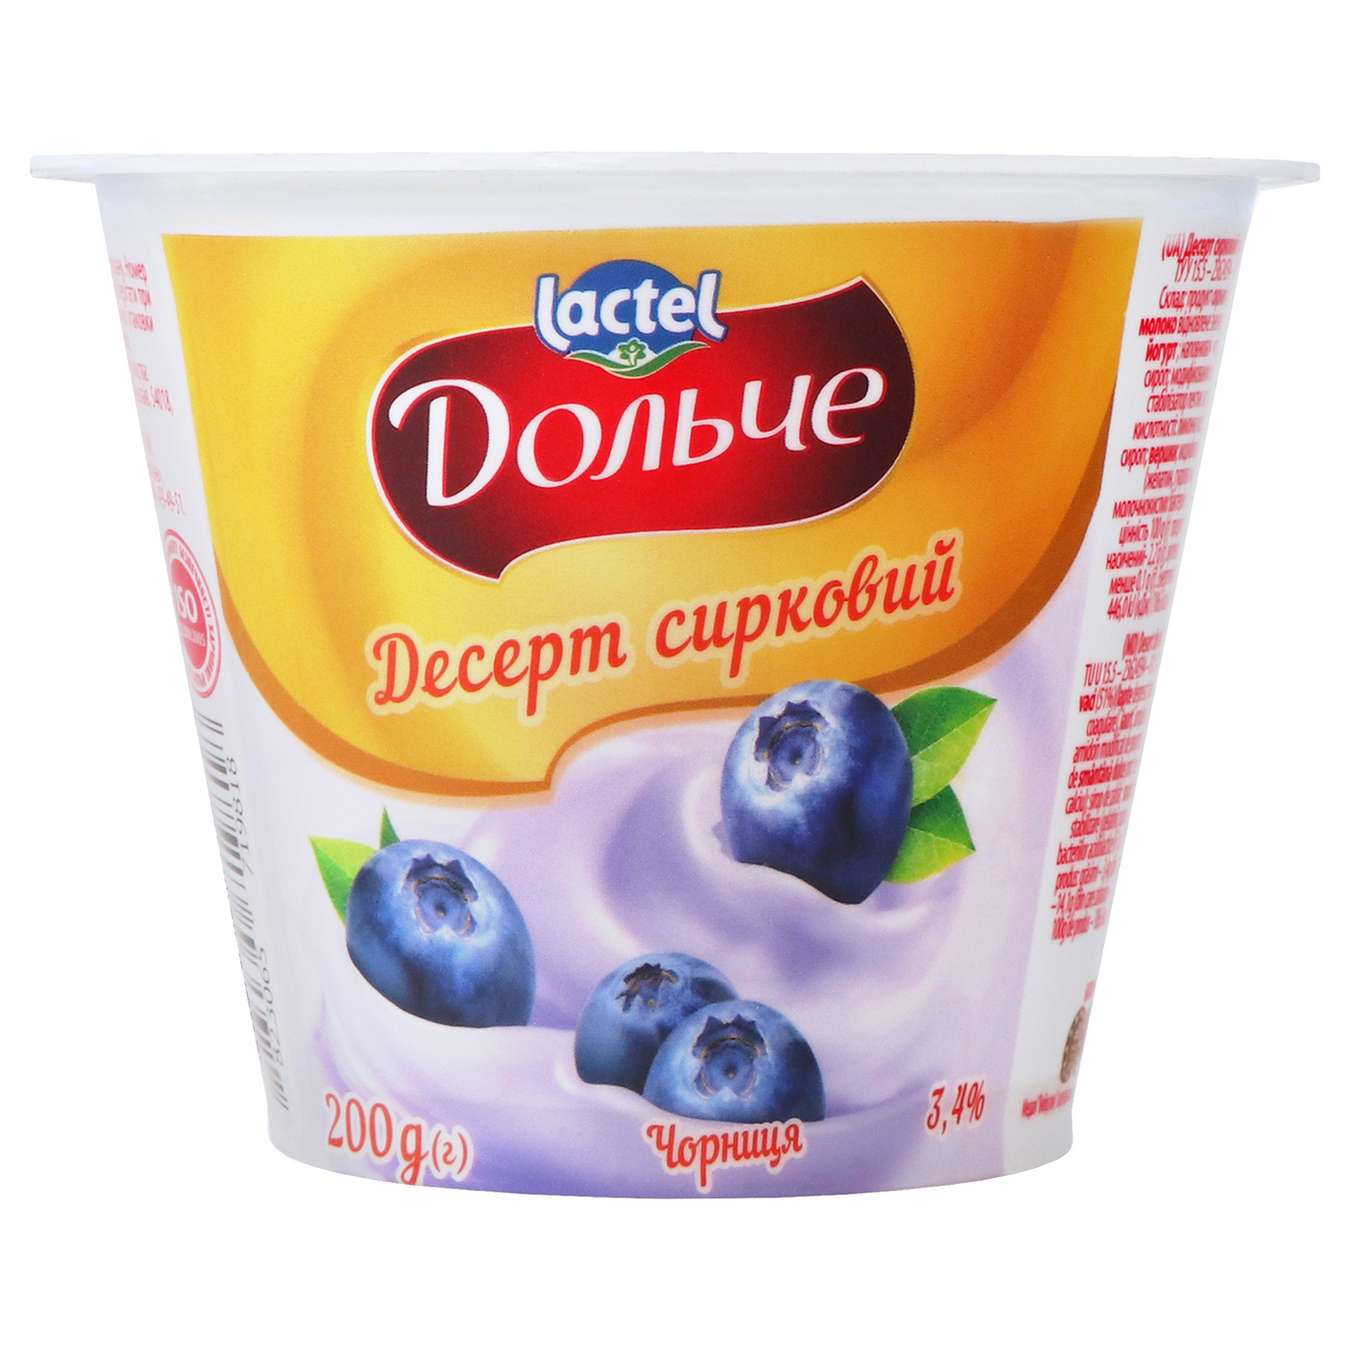 Десерт Дольче Чорниця сирковий 3,4% 200г